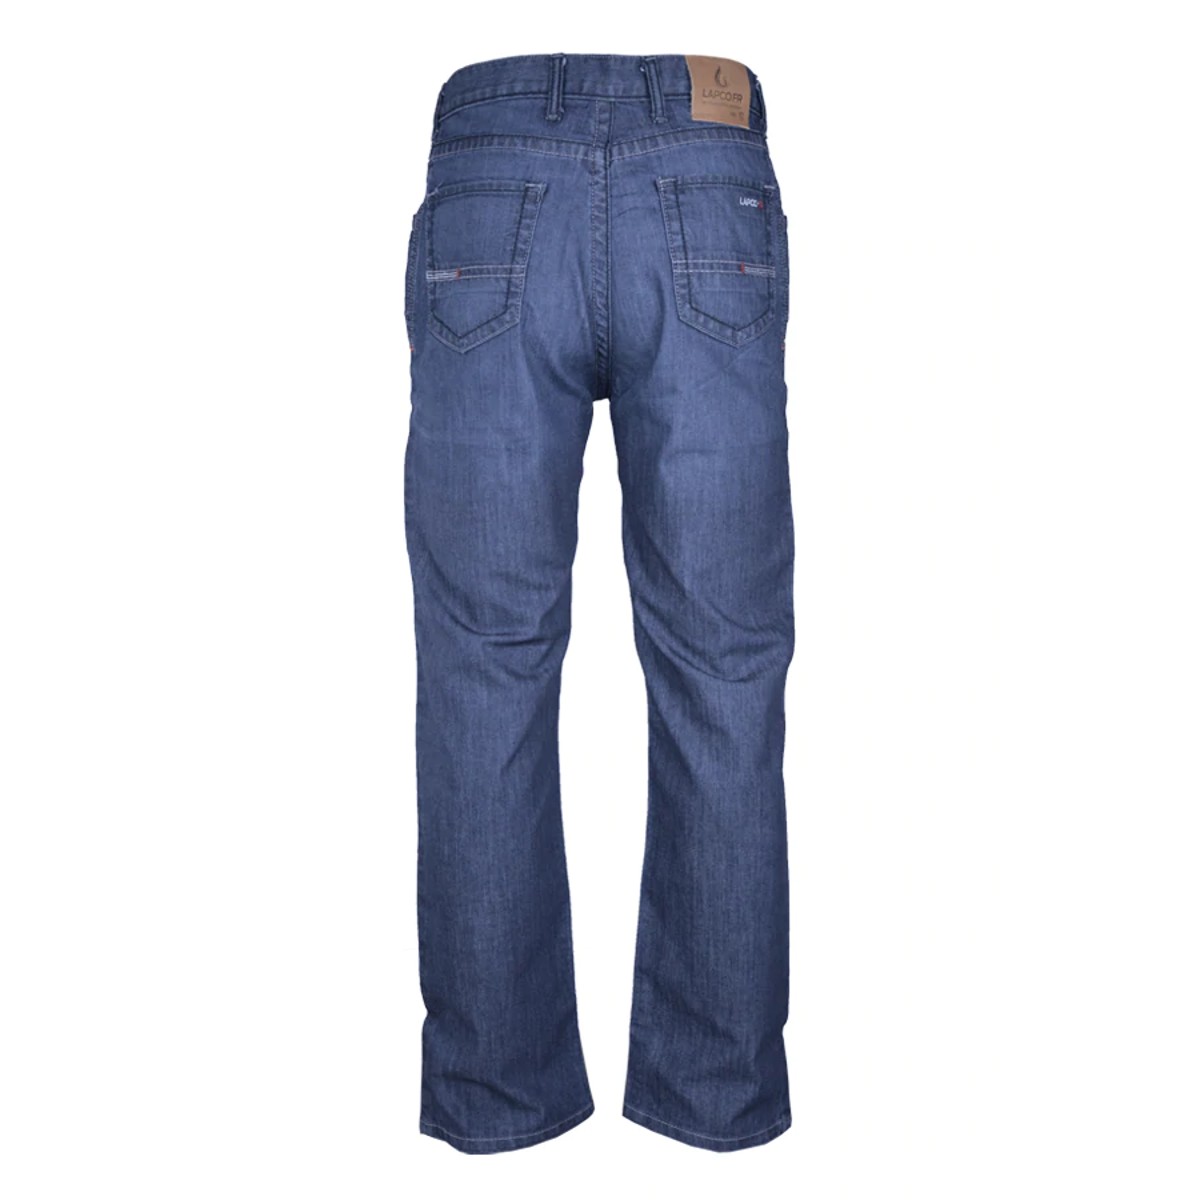 LAPCO FR Comfort Flex Jeans in Denim